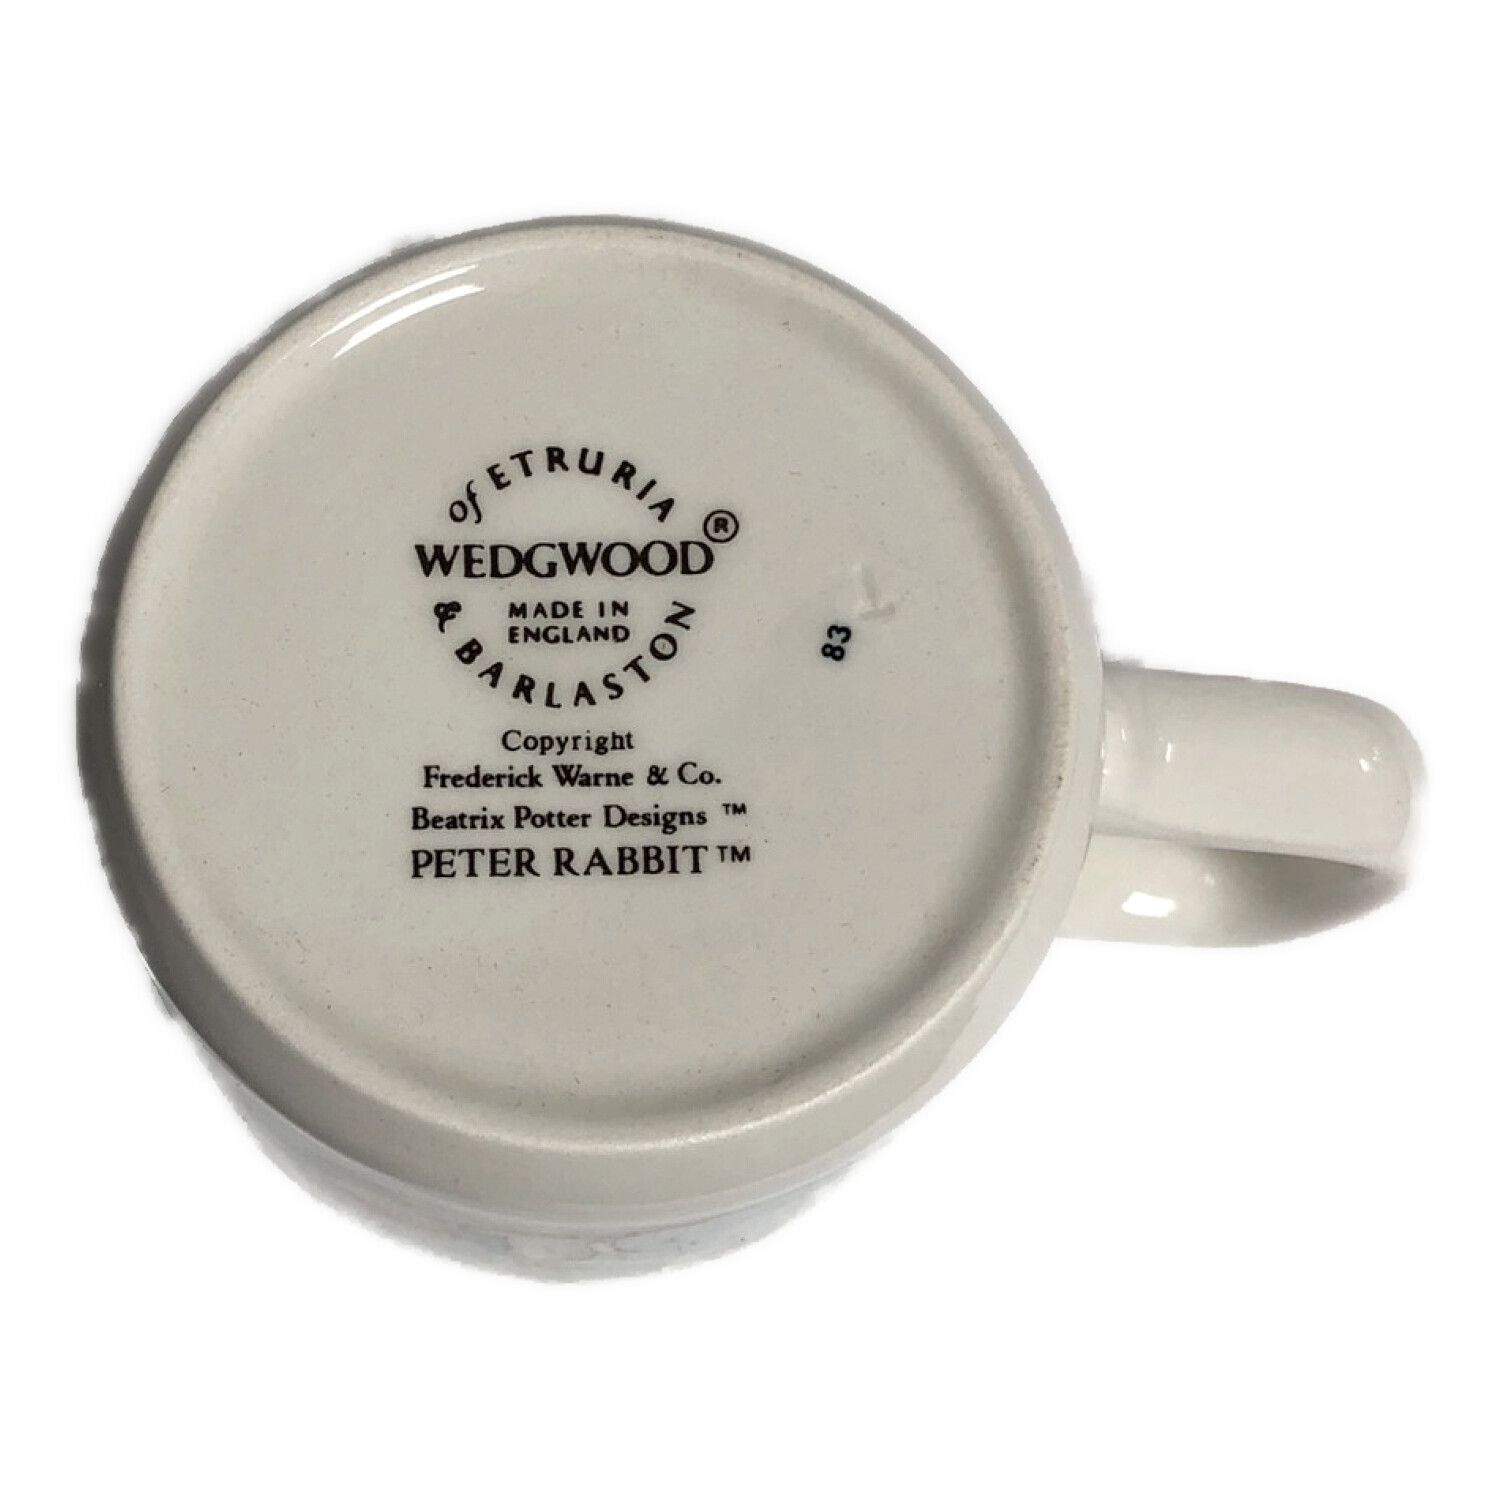 Wedgwood (ウェッジウッド) 食器セット ピーターラビット マグカップ 